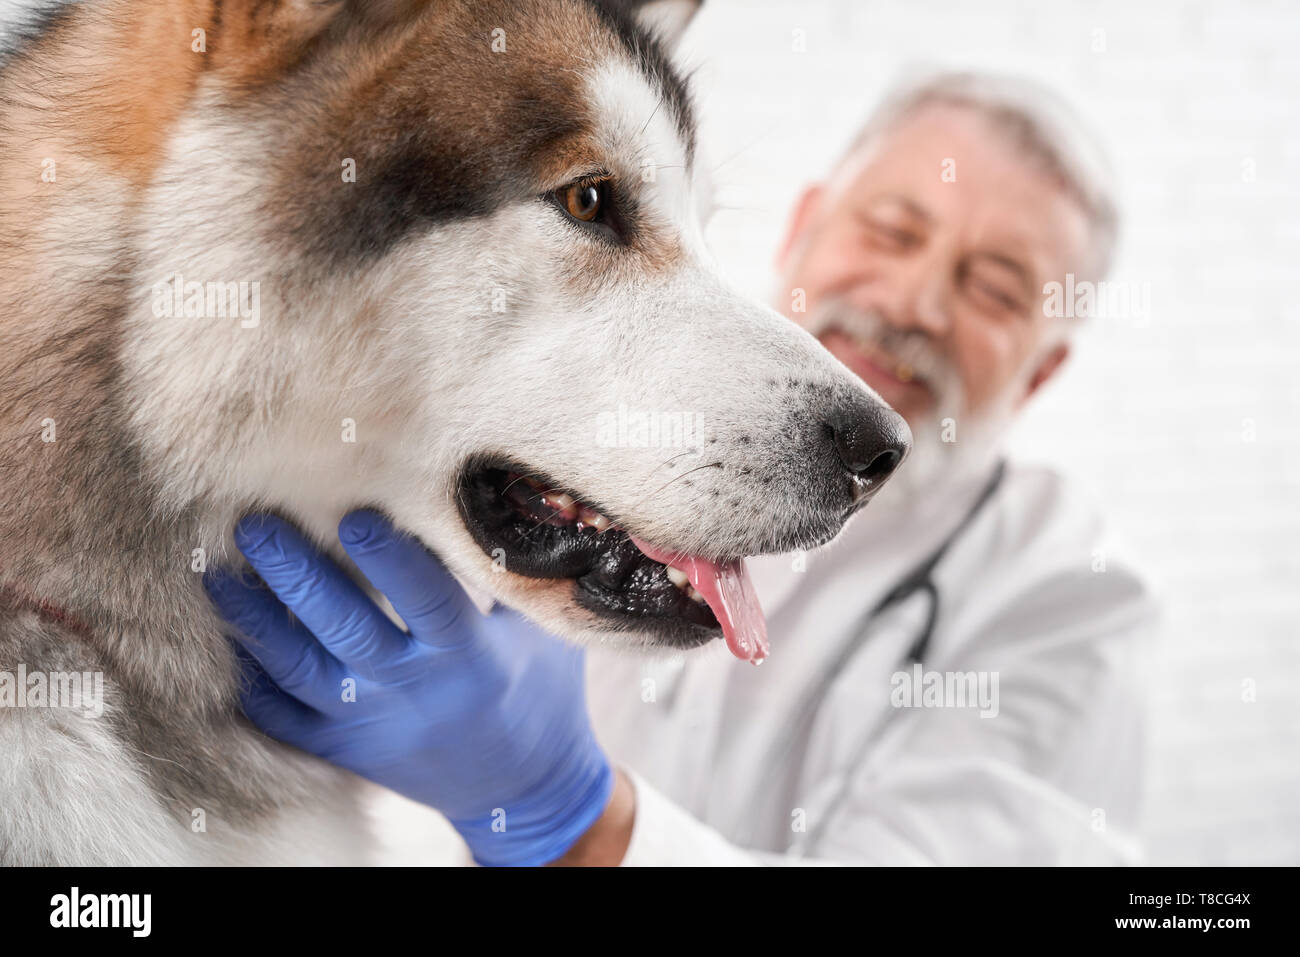 Seitenansicht des wunderschönen Alaskan Malamute. Großer Hund auf Prüfung in der Tierklinik. Tierarzt untersuchen und diagnostizieren Gesundheit des Tieres. Arzt in weißer Uniform und blaue Handschuhe. Stockfoto